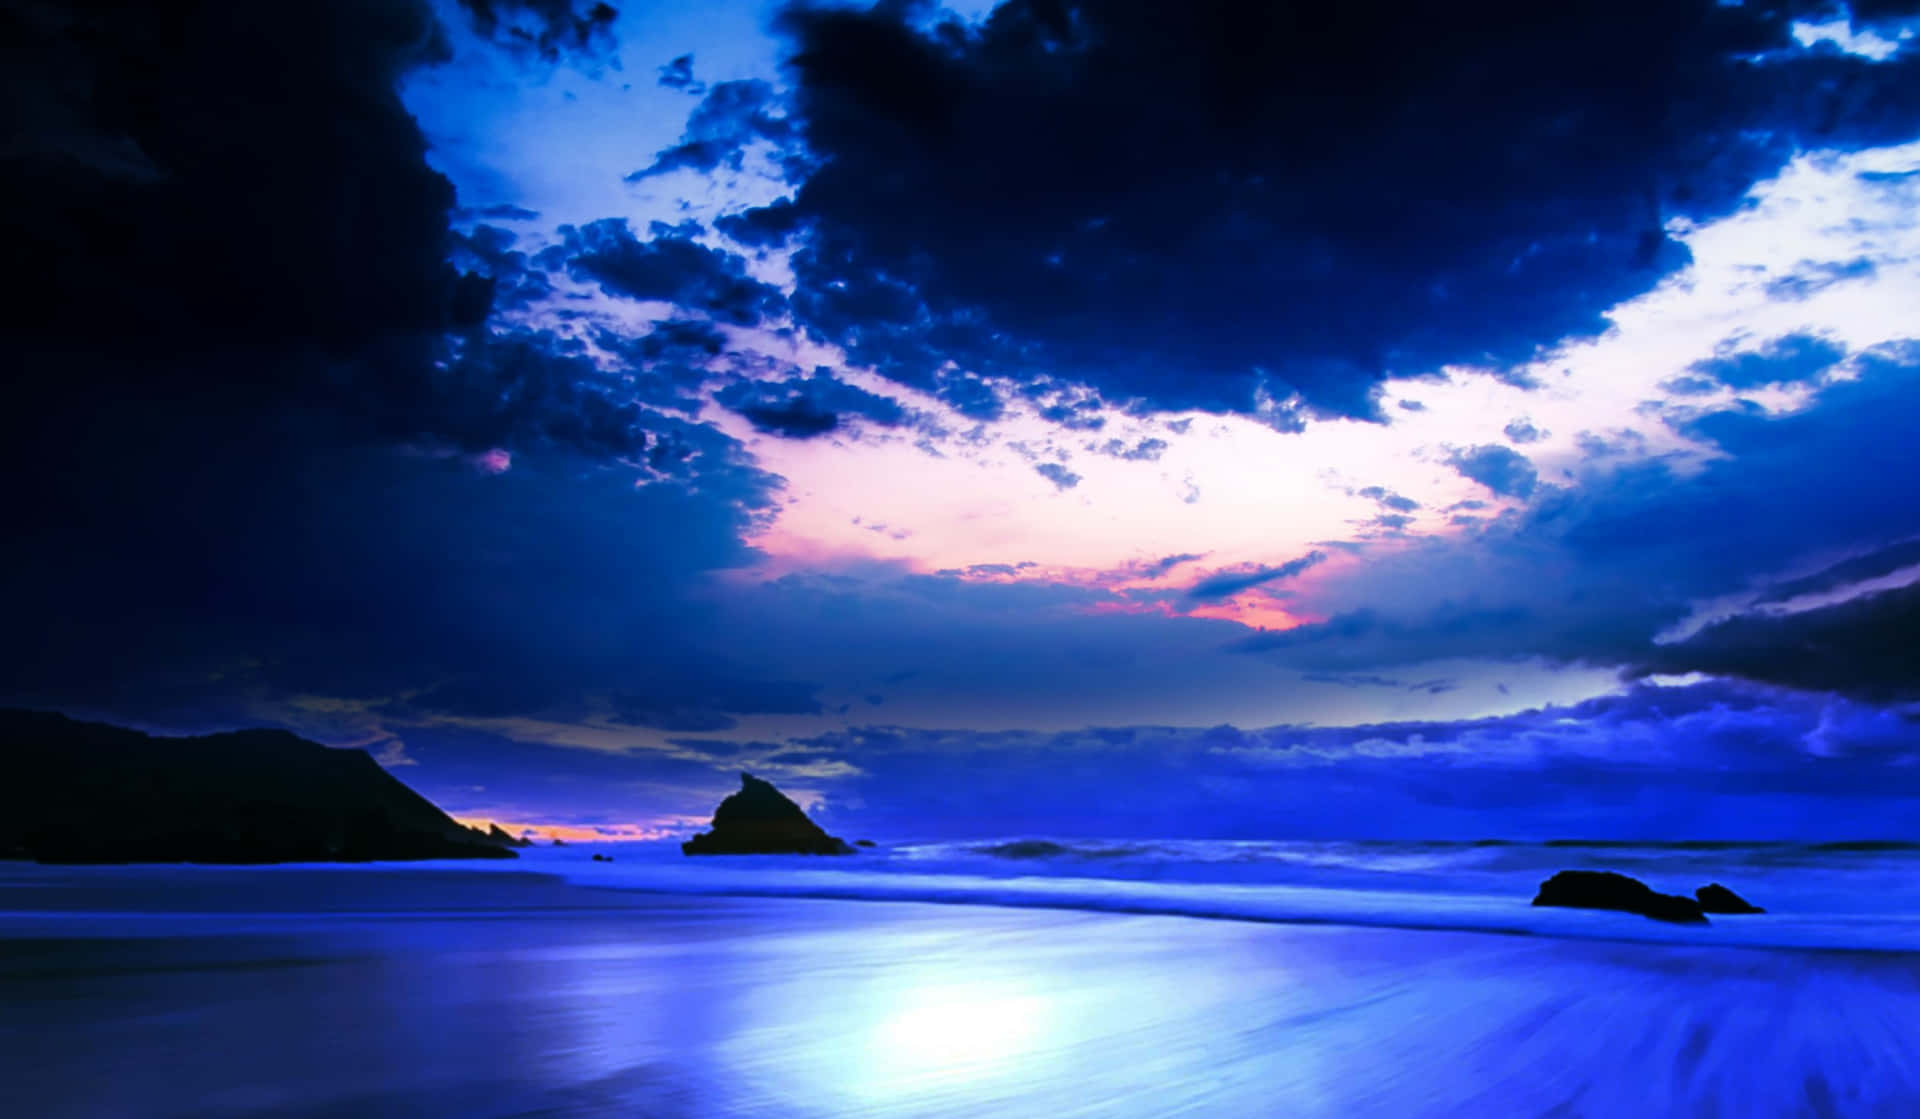 Samsung Dex With A Purple Beach Background